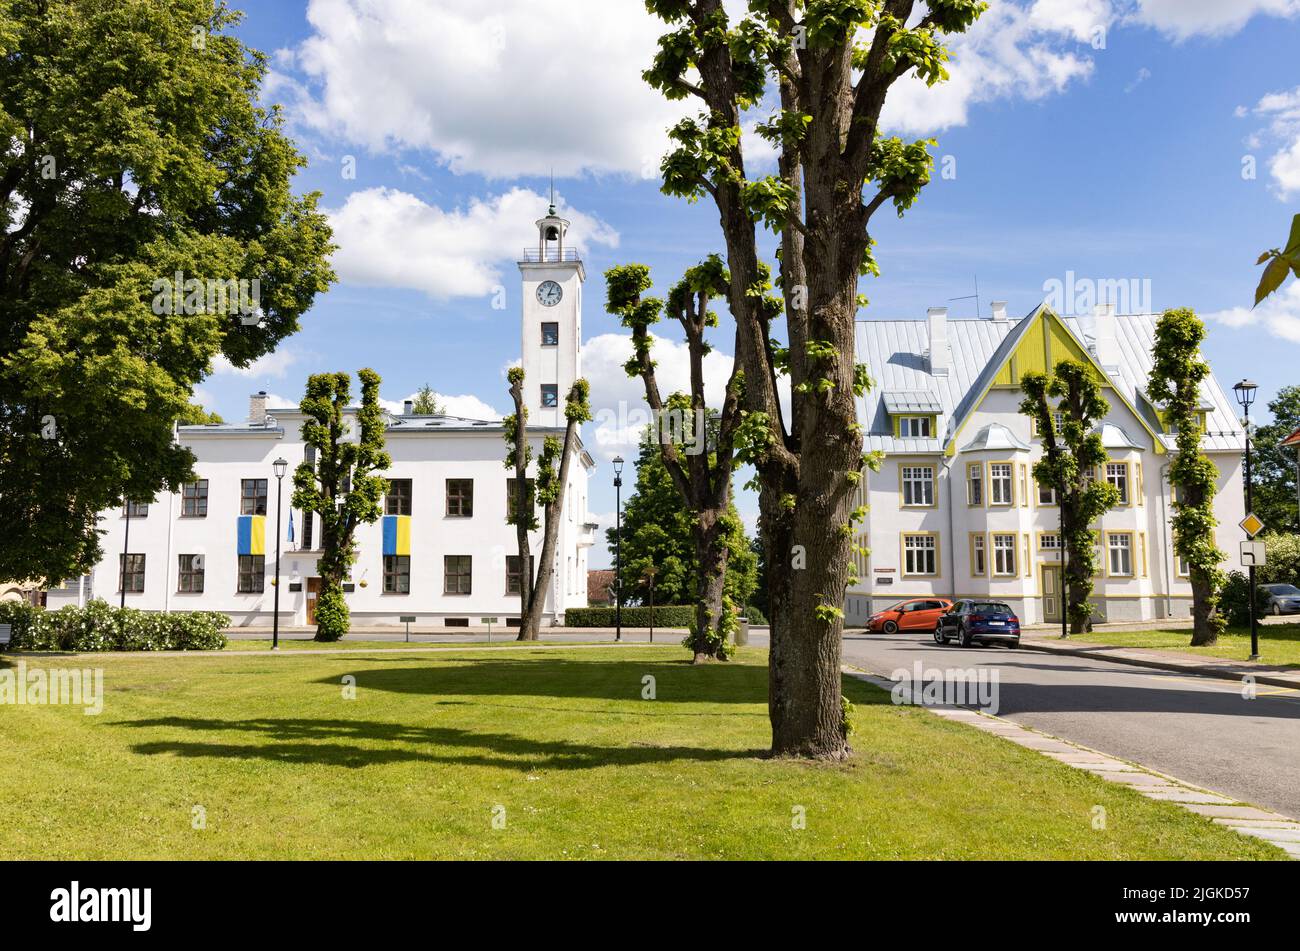 Viljandi Estonia; el centro de la ciudad de Viljandi en un día soleado en verano, con el Ayuntamiento de Viljandi a la izquierda, Viljandi, Estonia Europa Foto de stock